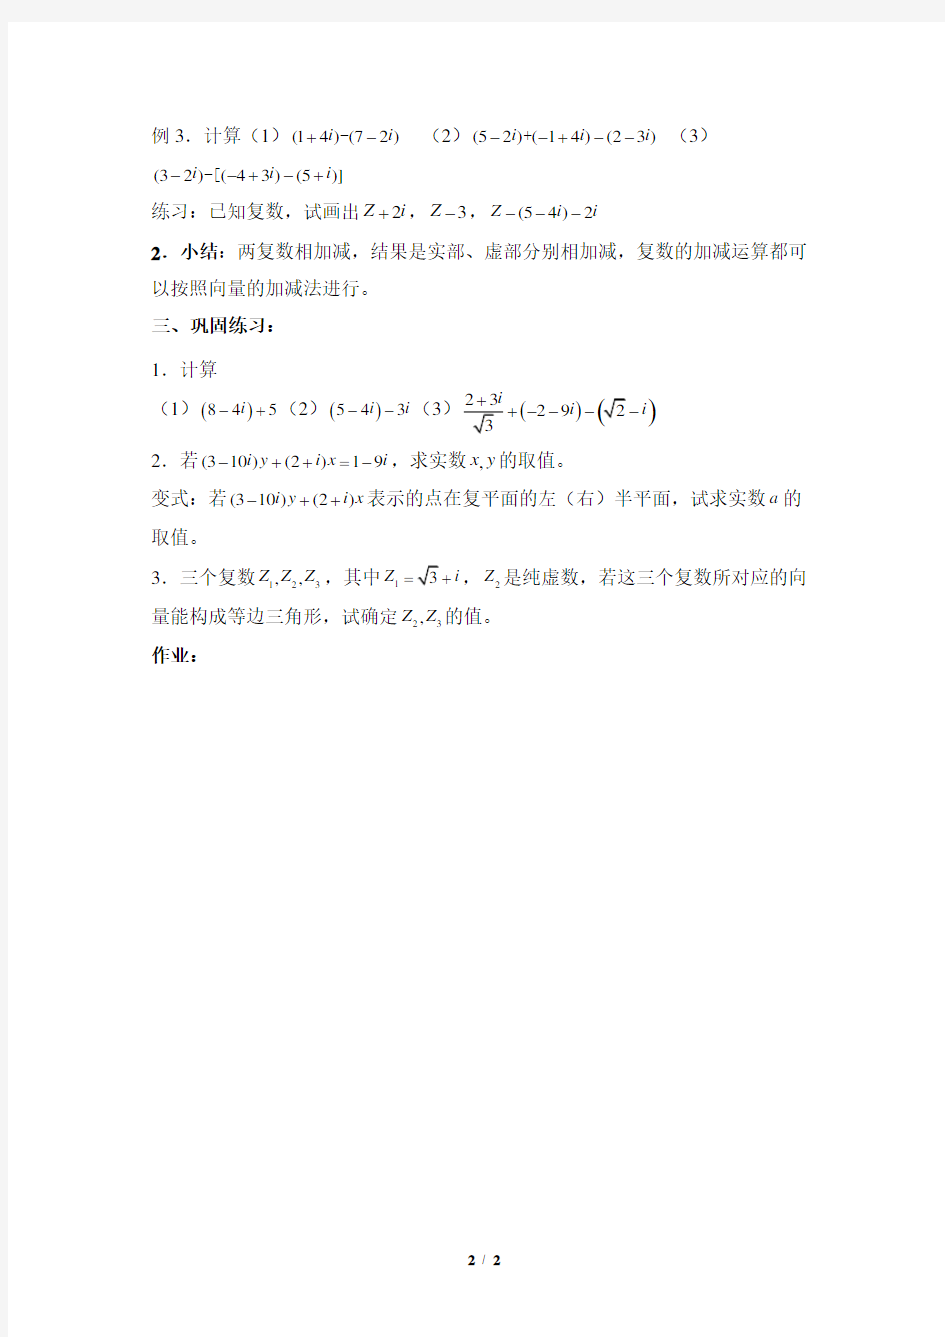 《复数代数形式的加减运算及其几何意义》参考教案2